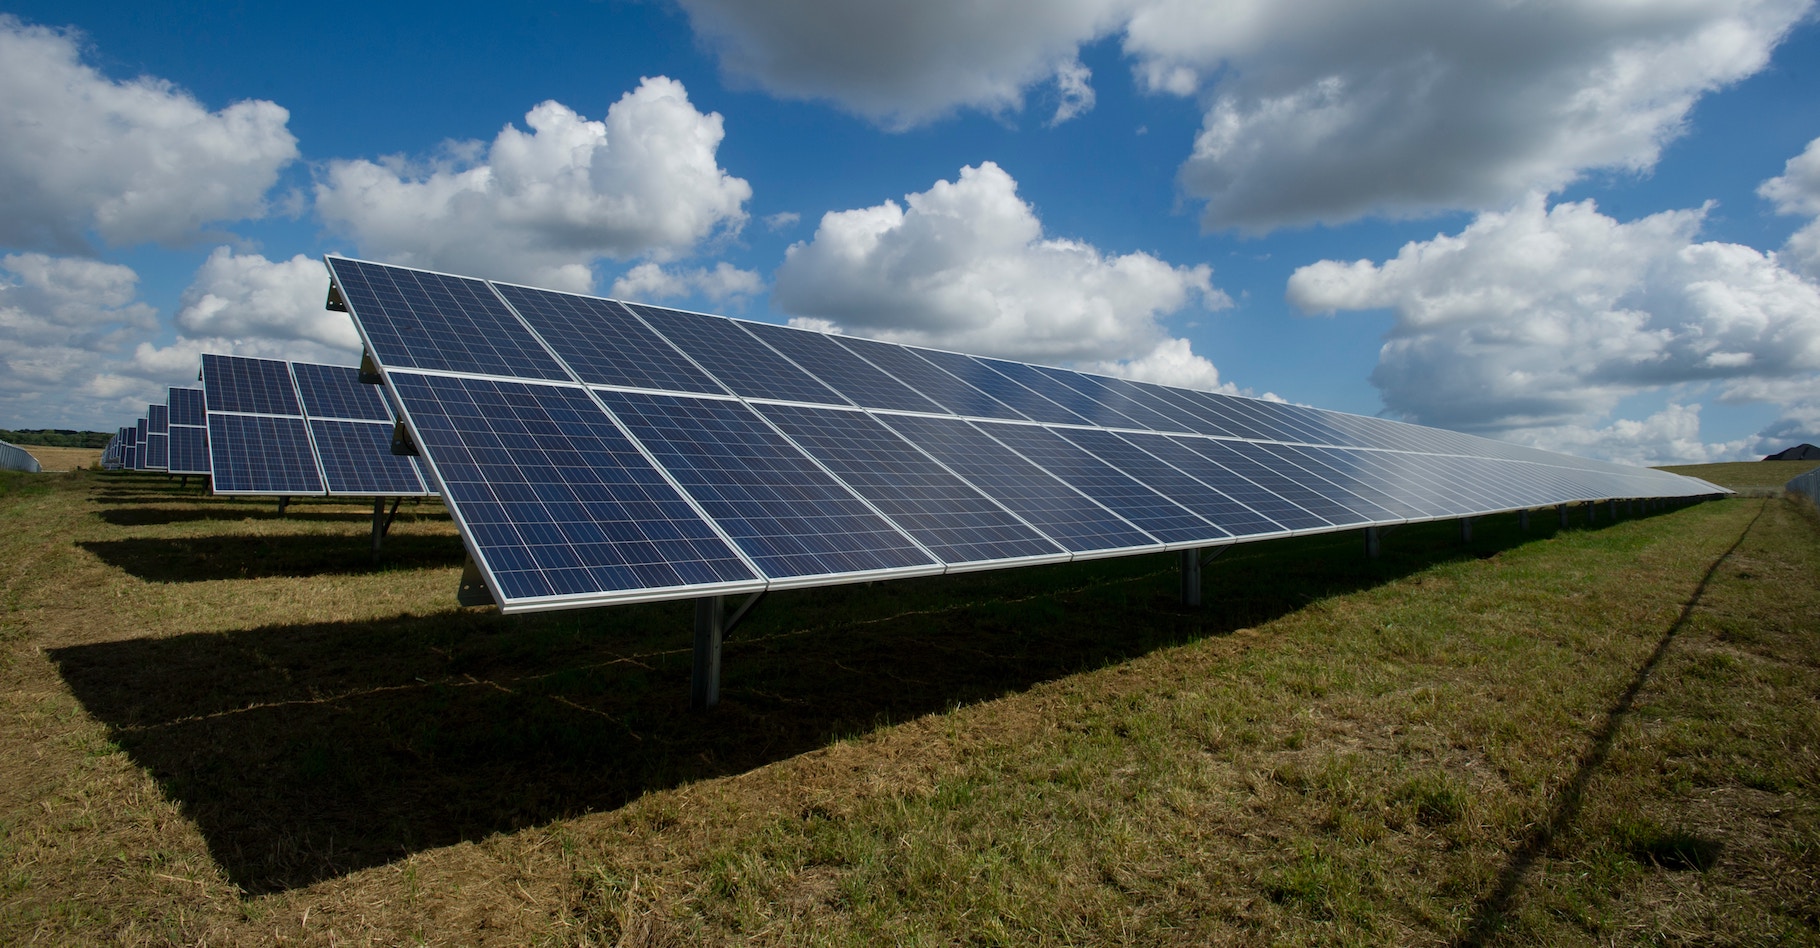 Les chercheurs ont toujours de nouvelles idées pour améliorer l’efficacité des panneaux solaires photovoltaïques. Cette fois, ils imaginent recourir à des nanoparticules recouvertes de colorants organiques. © American Public Power Association, Unsplash